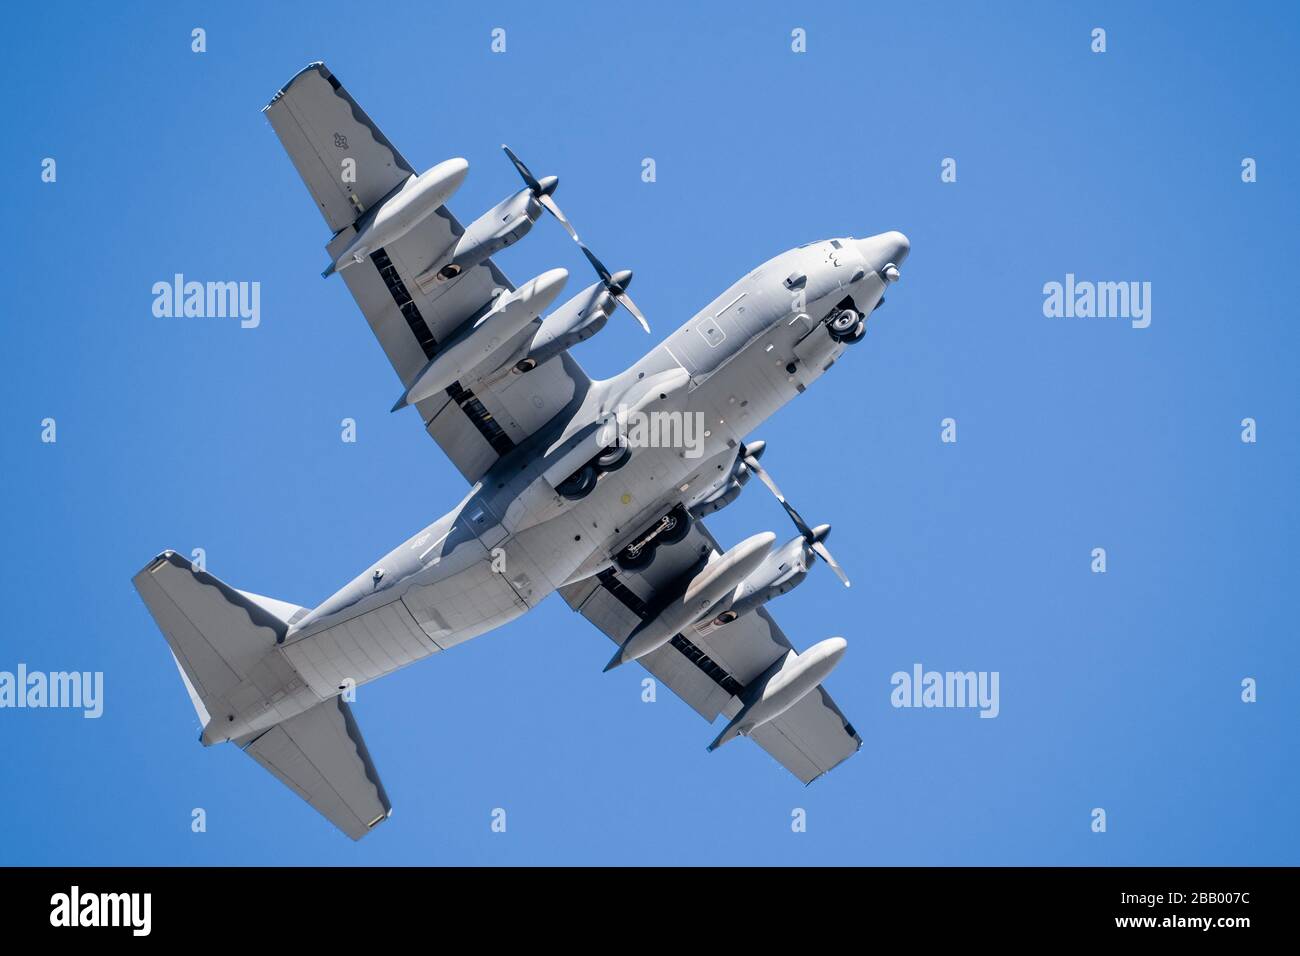 25 mars 2020 Mountain View / CA / USA - gros plan des avions militaires de l'armée de l'air américaine effectuant un vol d'entraînement Banque D'Images